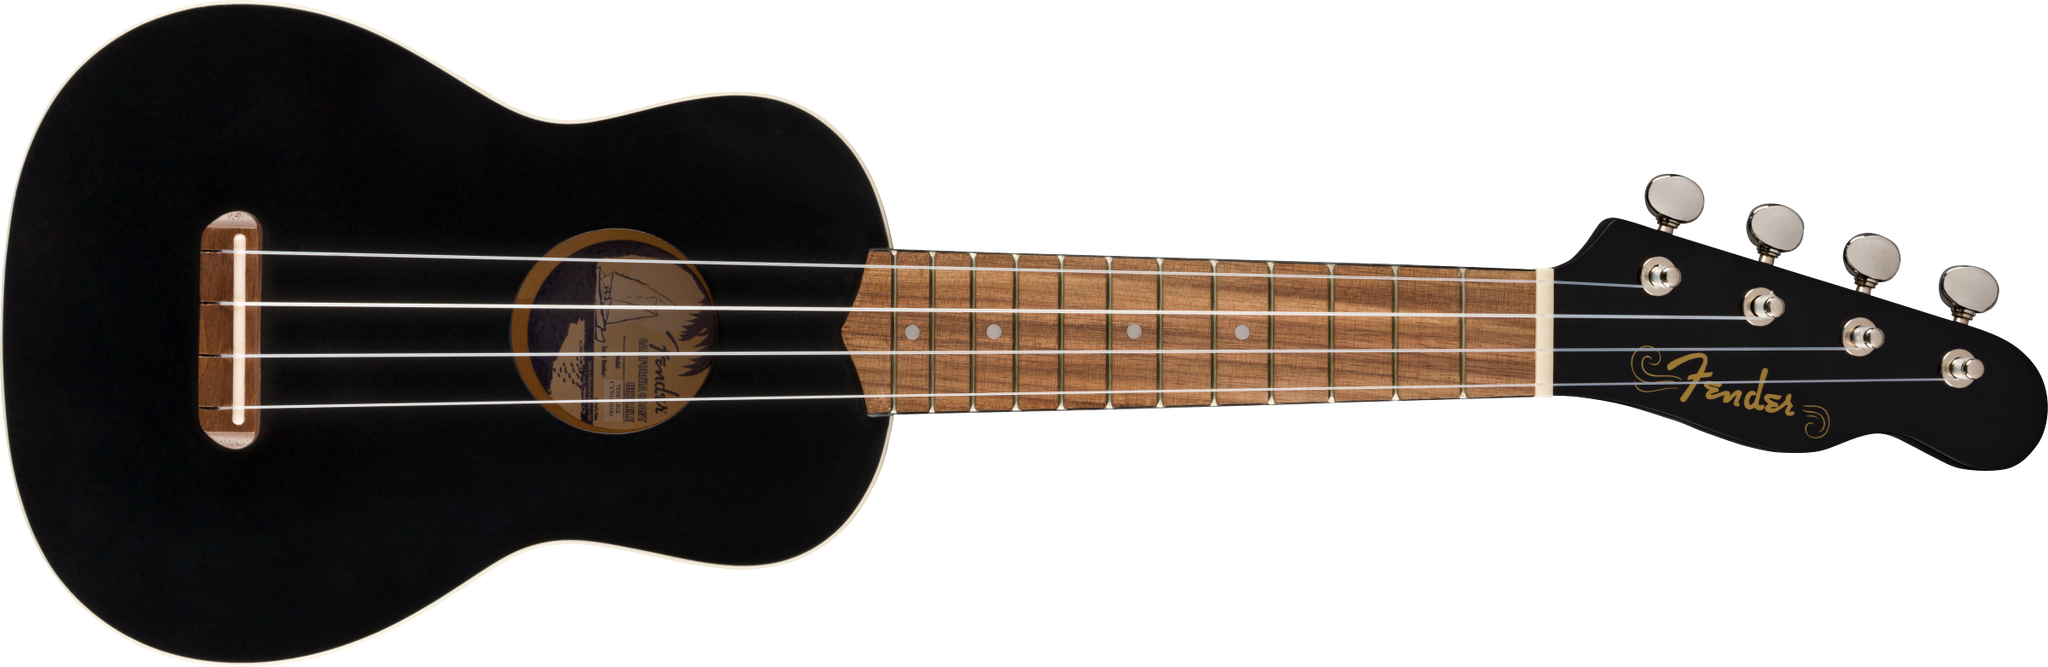 Fender Venice Soprano Ukulele. Black